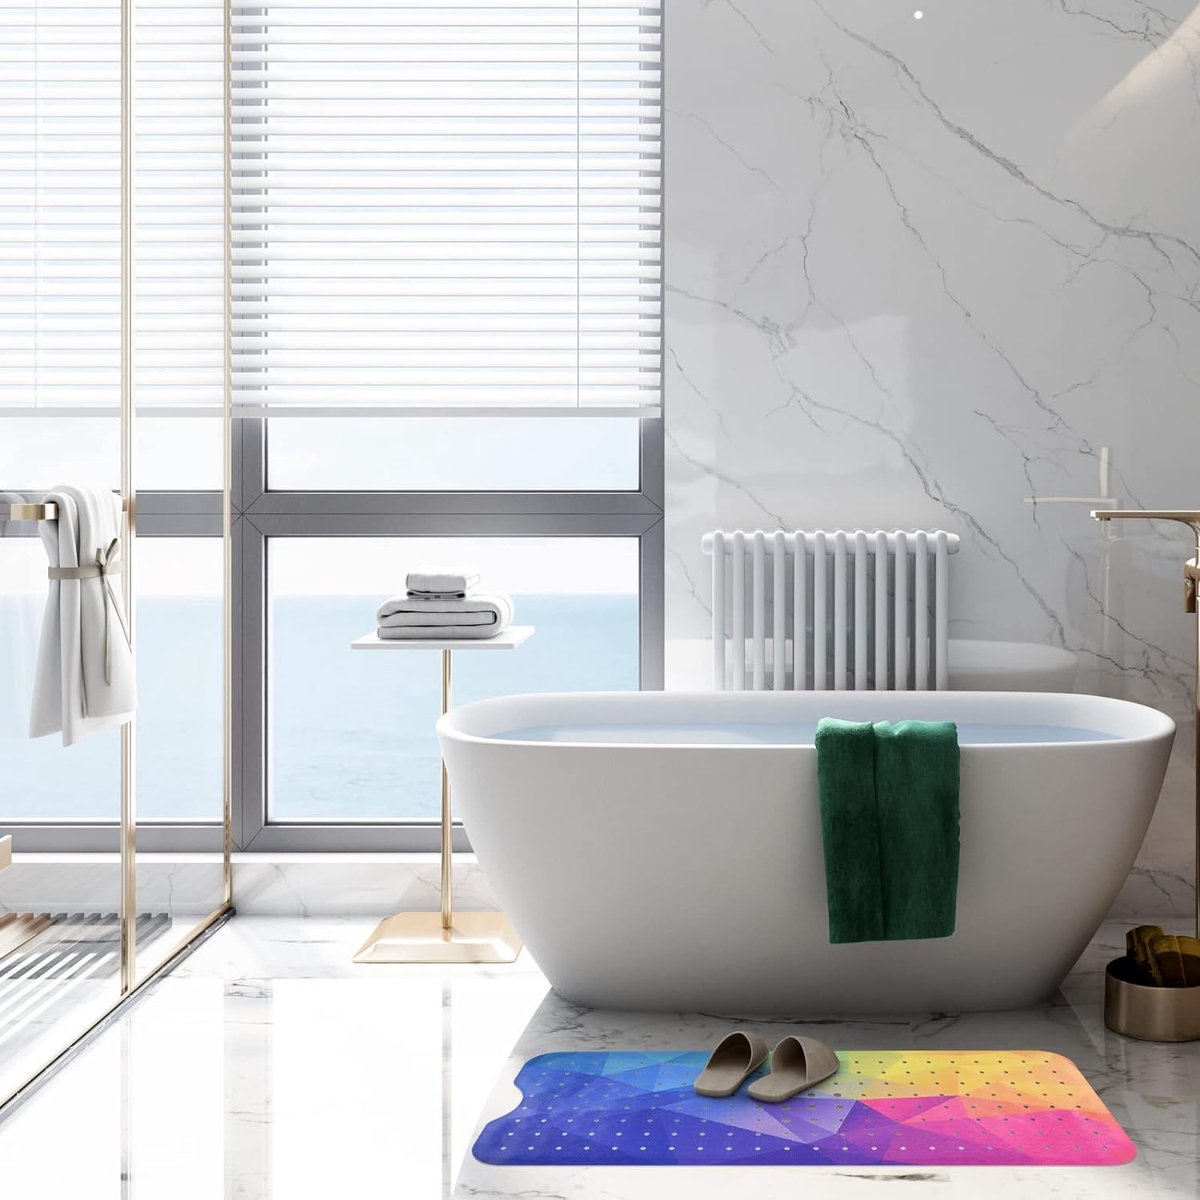 Badmat antislip badmatten voor de badkamer. Leuk badmat-design. Extra lange badmat van 100 x 40 cm